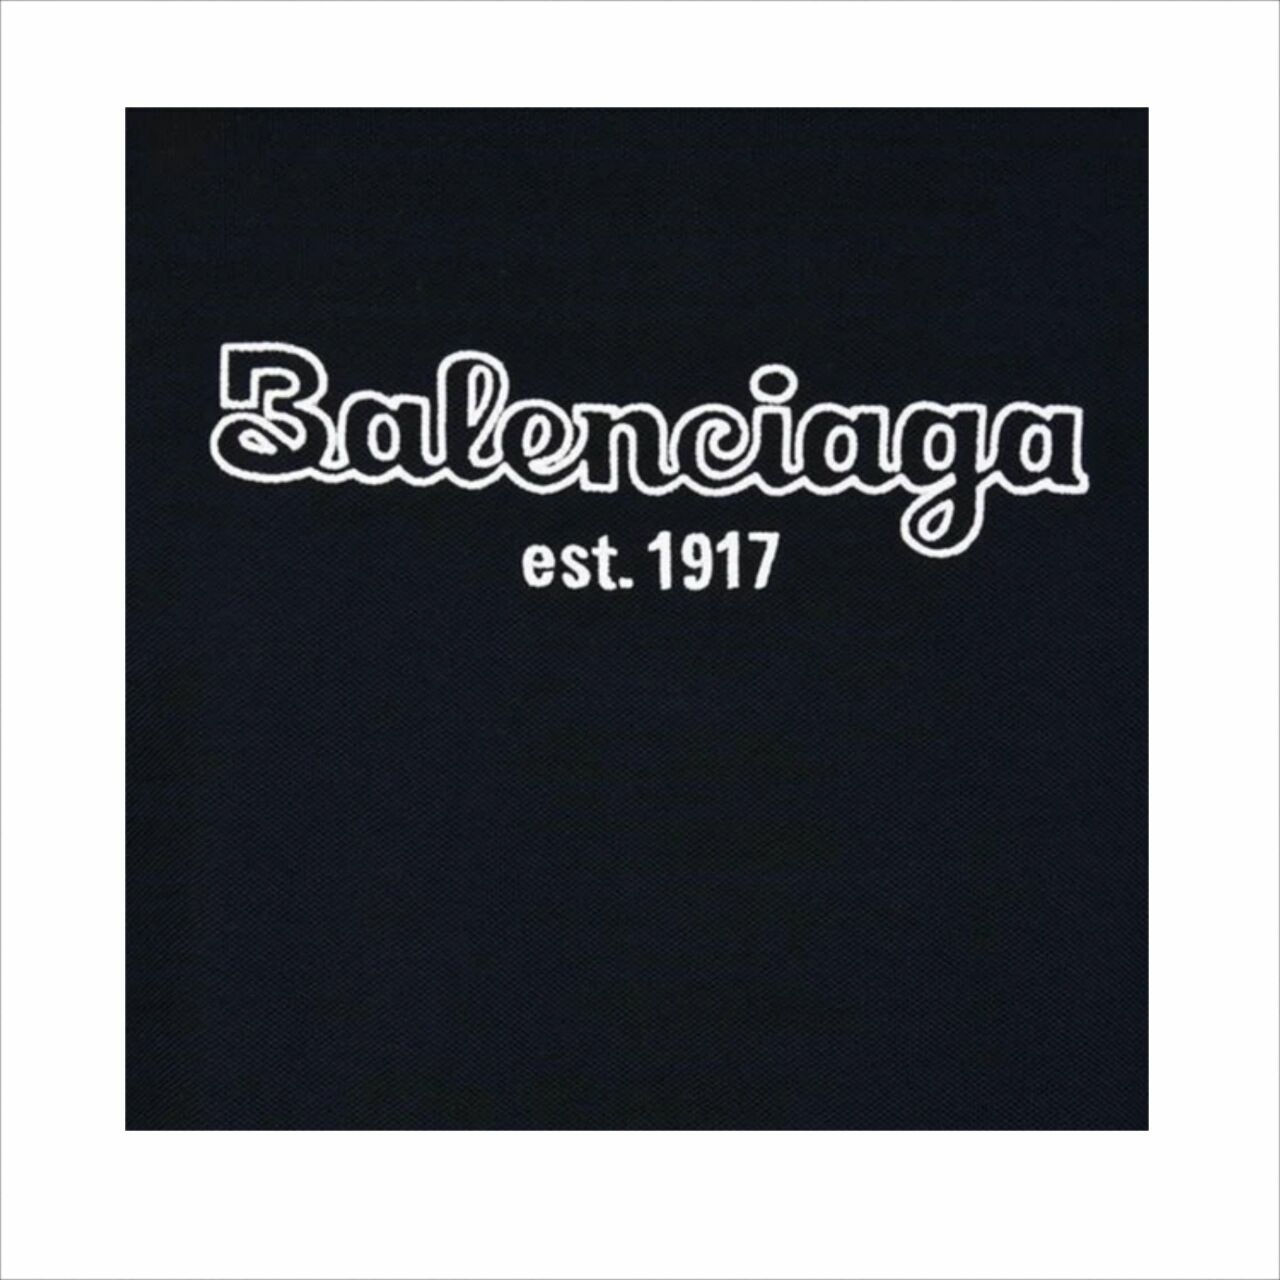  Balenciaga Navy Back Logo Polo T-Shirt